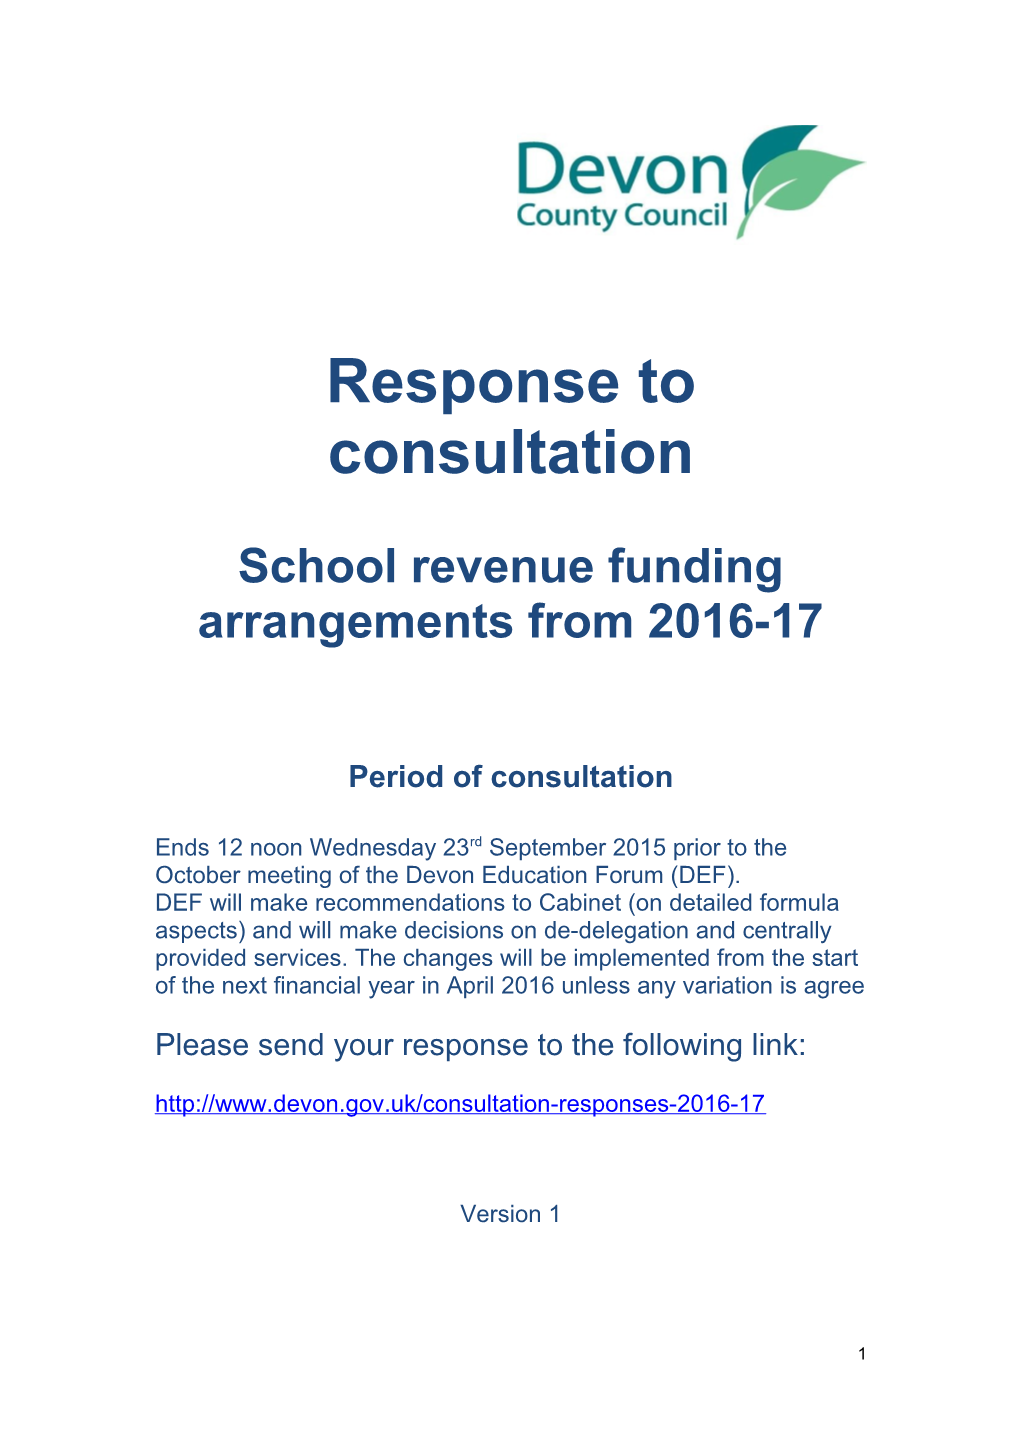 School Revenue Funding Arrangements from 2016-17